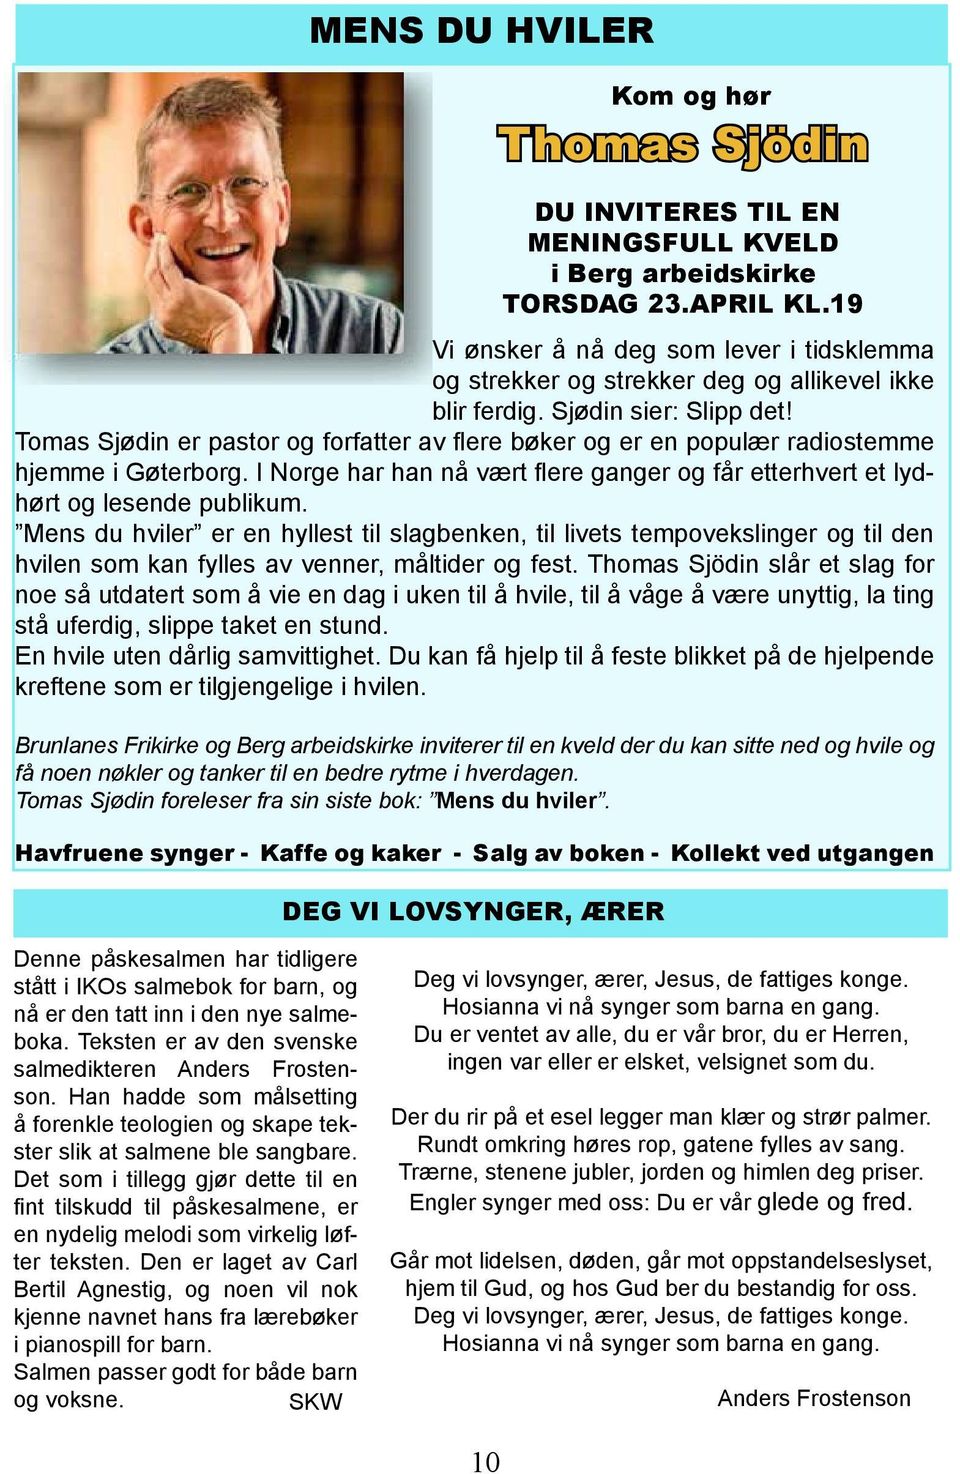 Tomas Sjødin er pastor og forfatter av flere bøker og er en populær radiostemme hjemme i Gøterborg. I Norge har han nå vært flere ganger og får etterhvert et lydhørt og lesende publikum.